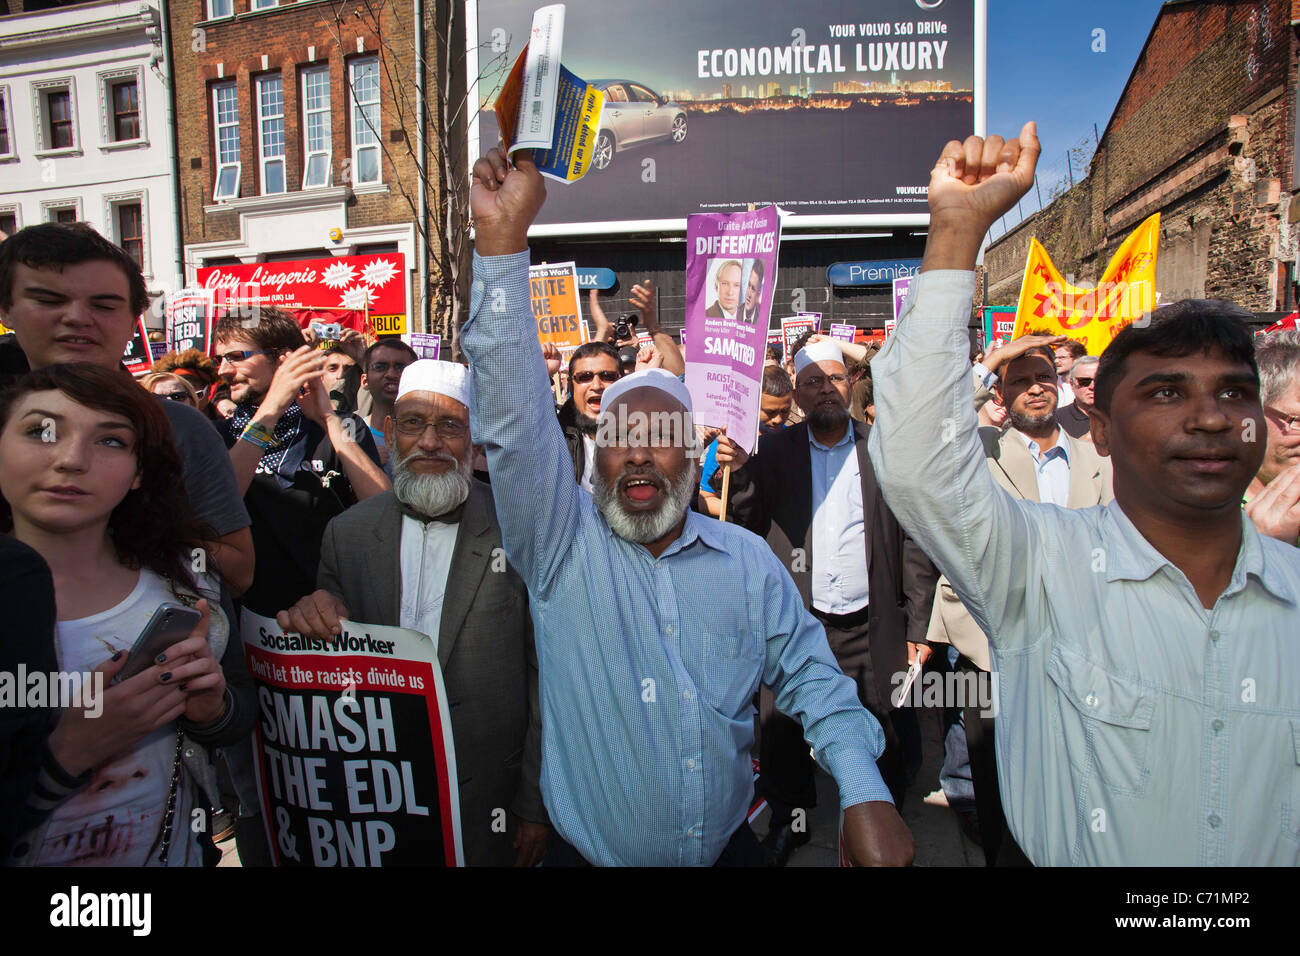 Unite Against Fascism Demonstration gegen die EDL. Whitechapel, East London. Dieser Bereich ist ein überwiegend asiatischen Raum. Stockfoto